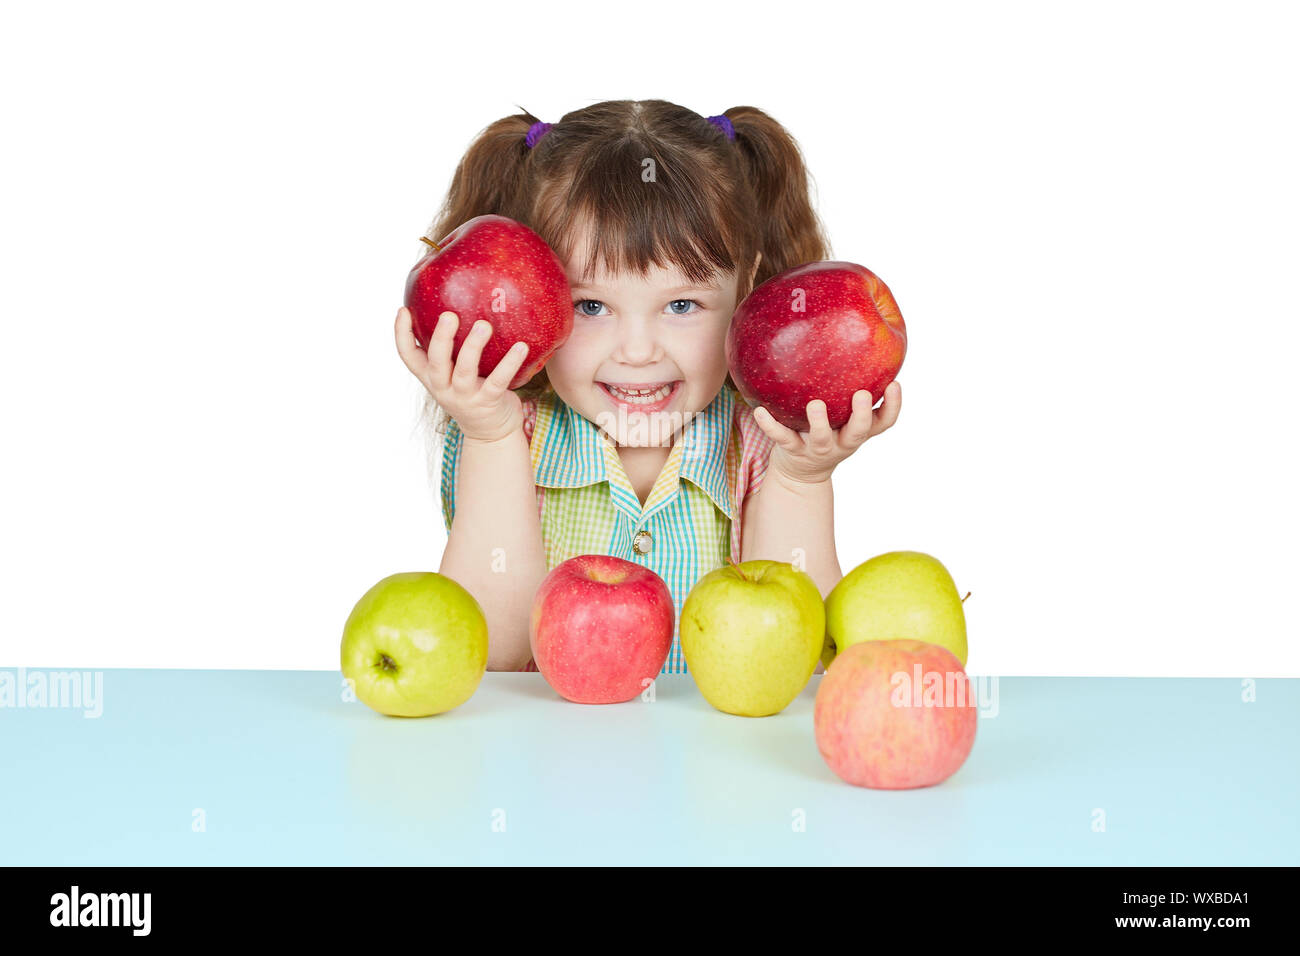 Мама ест яблоко. Девочка с яблоками. Девочка ест яблоко. Фотосессия с яблоками детская. Малыши с яблоками в детском саду.